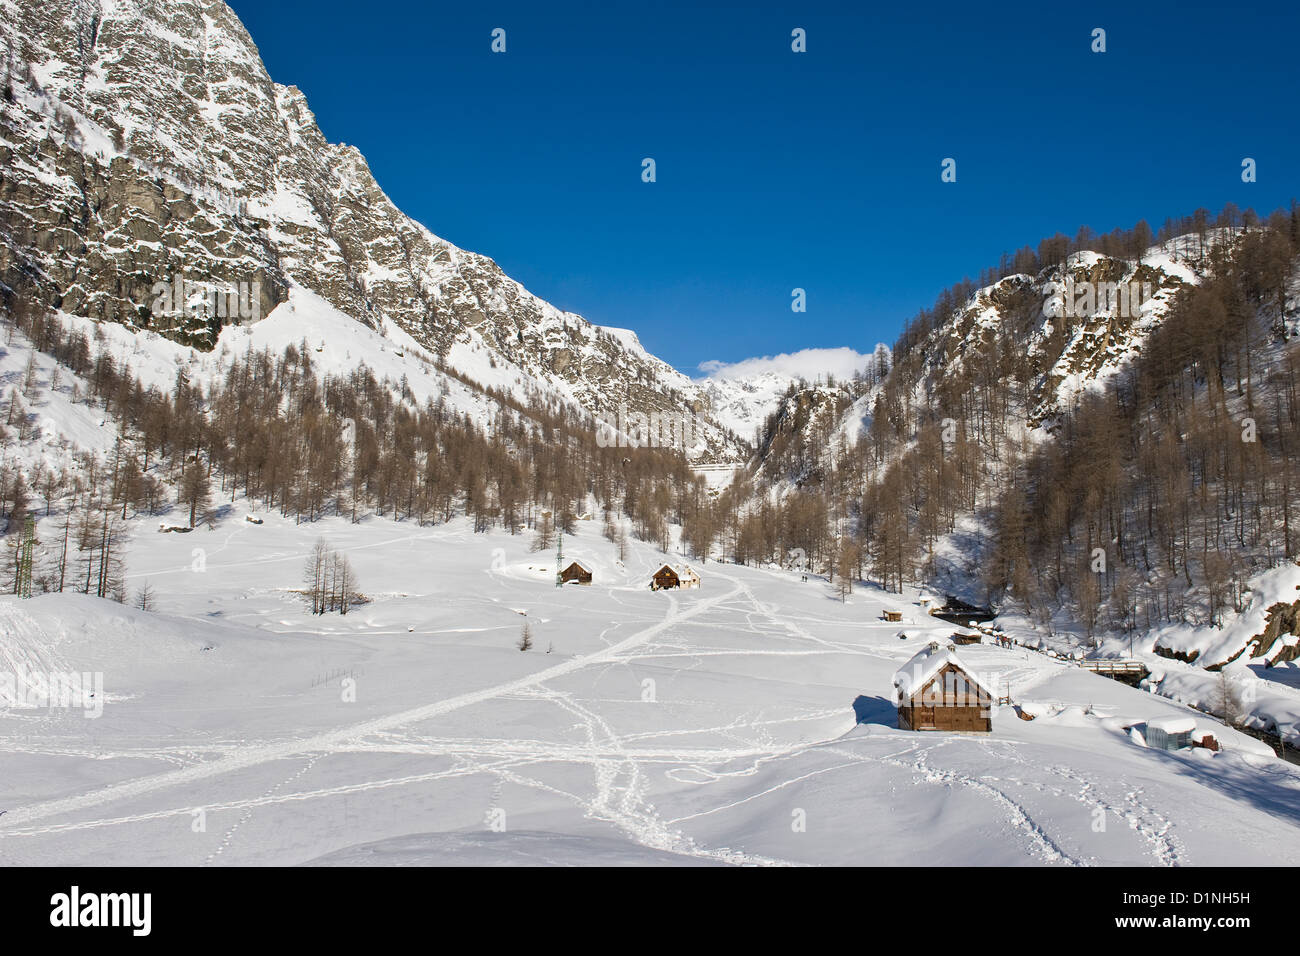 Italy, Piedmont, Alpe Devero Stock Photo